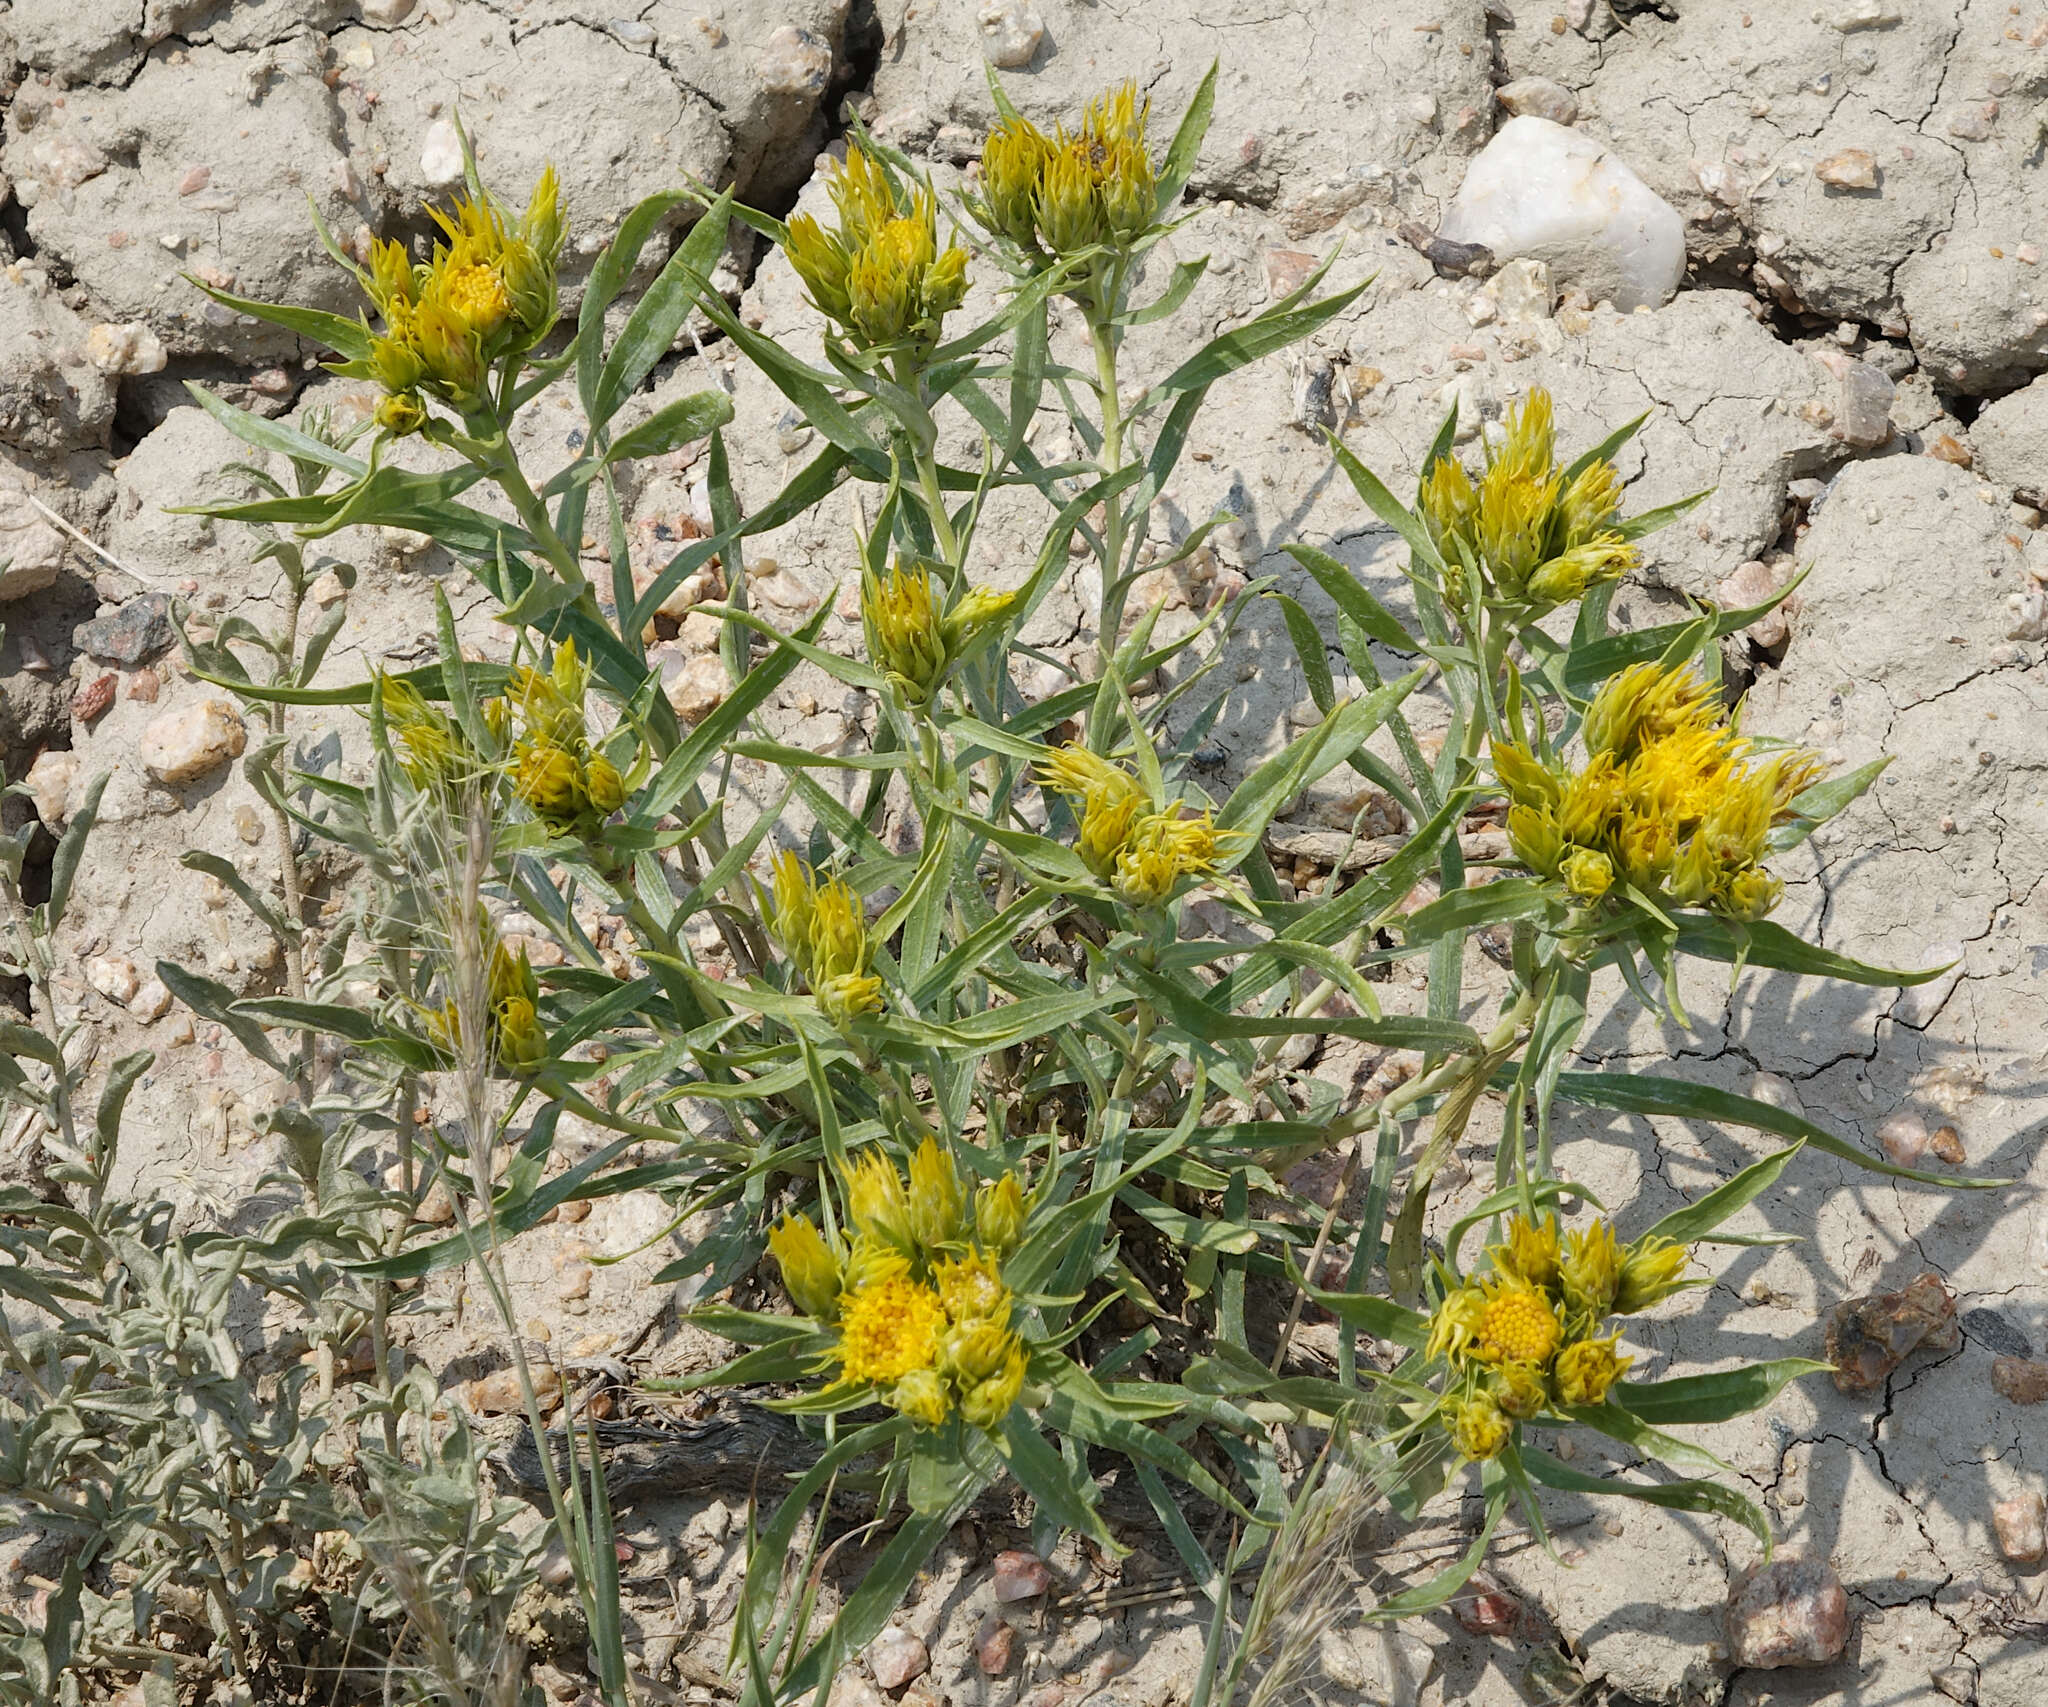 Image of Ward's false goldenweed